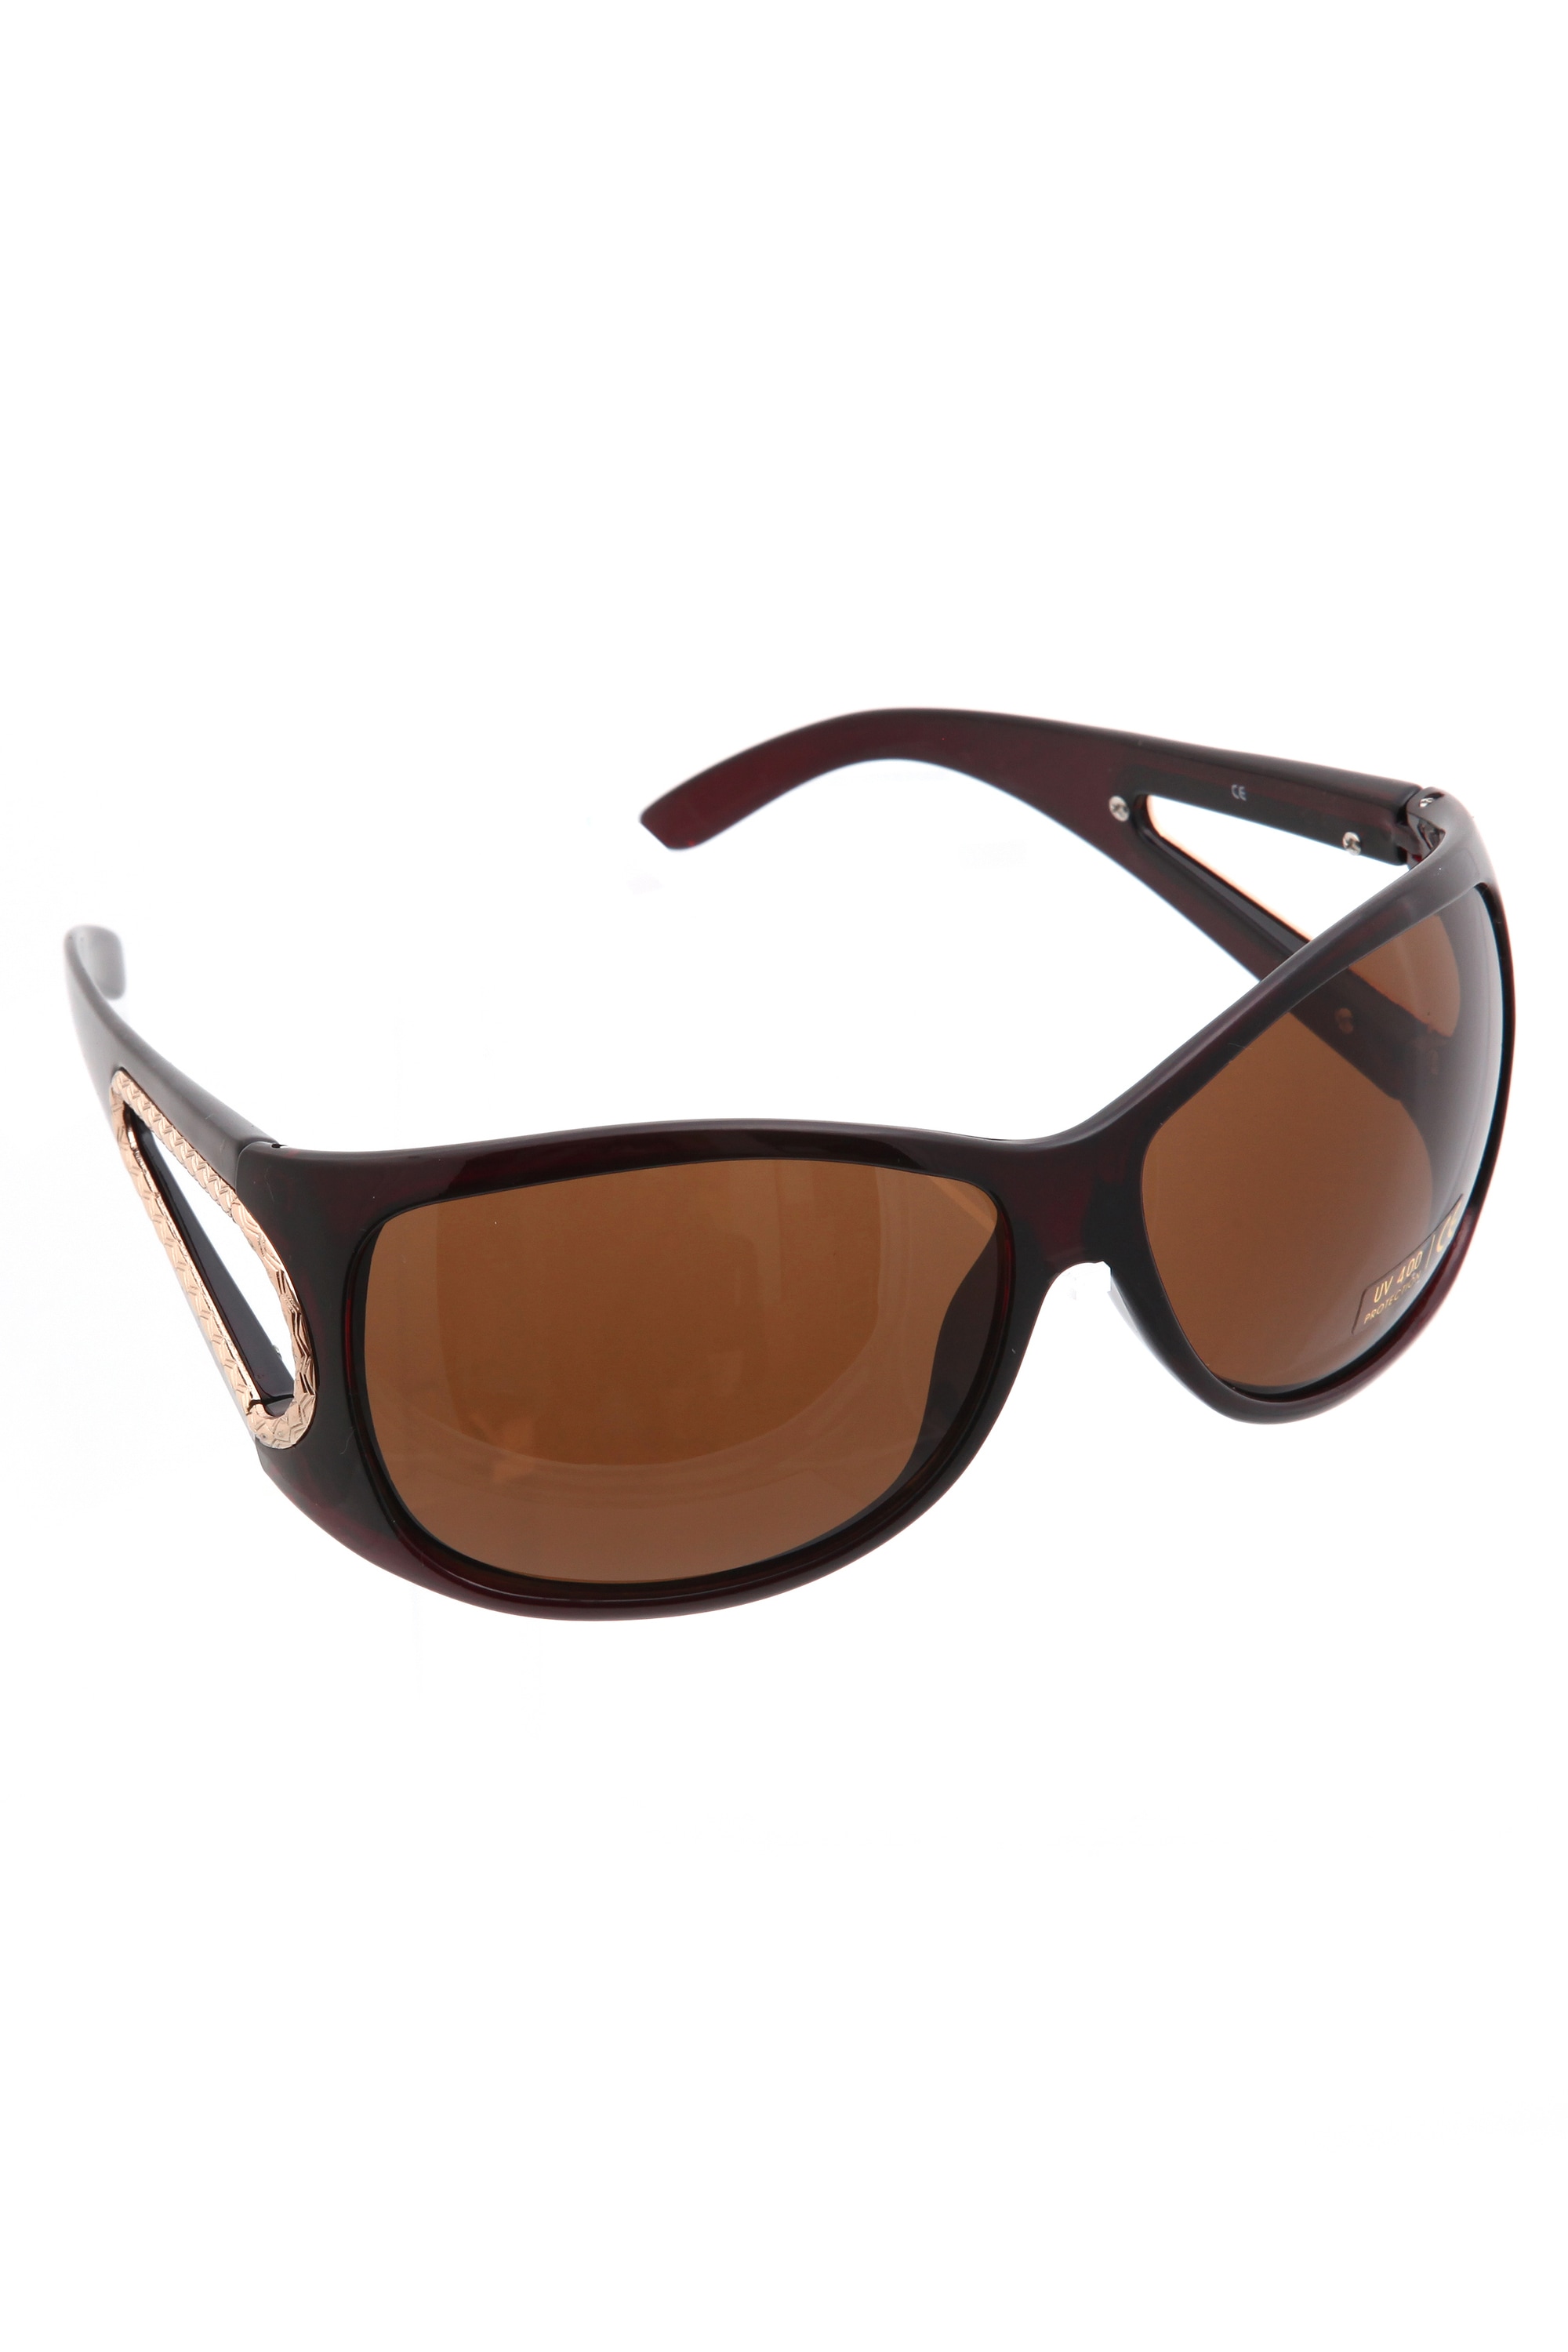 COLLEZIONE ALESSANDRO Sonnenbrille »Mesh« mit ausgestanztem Bügel | Modeschals